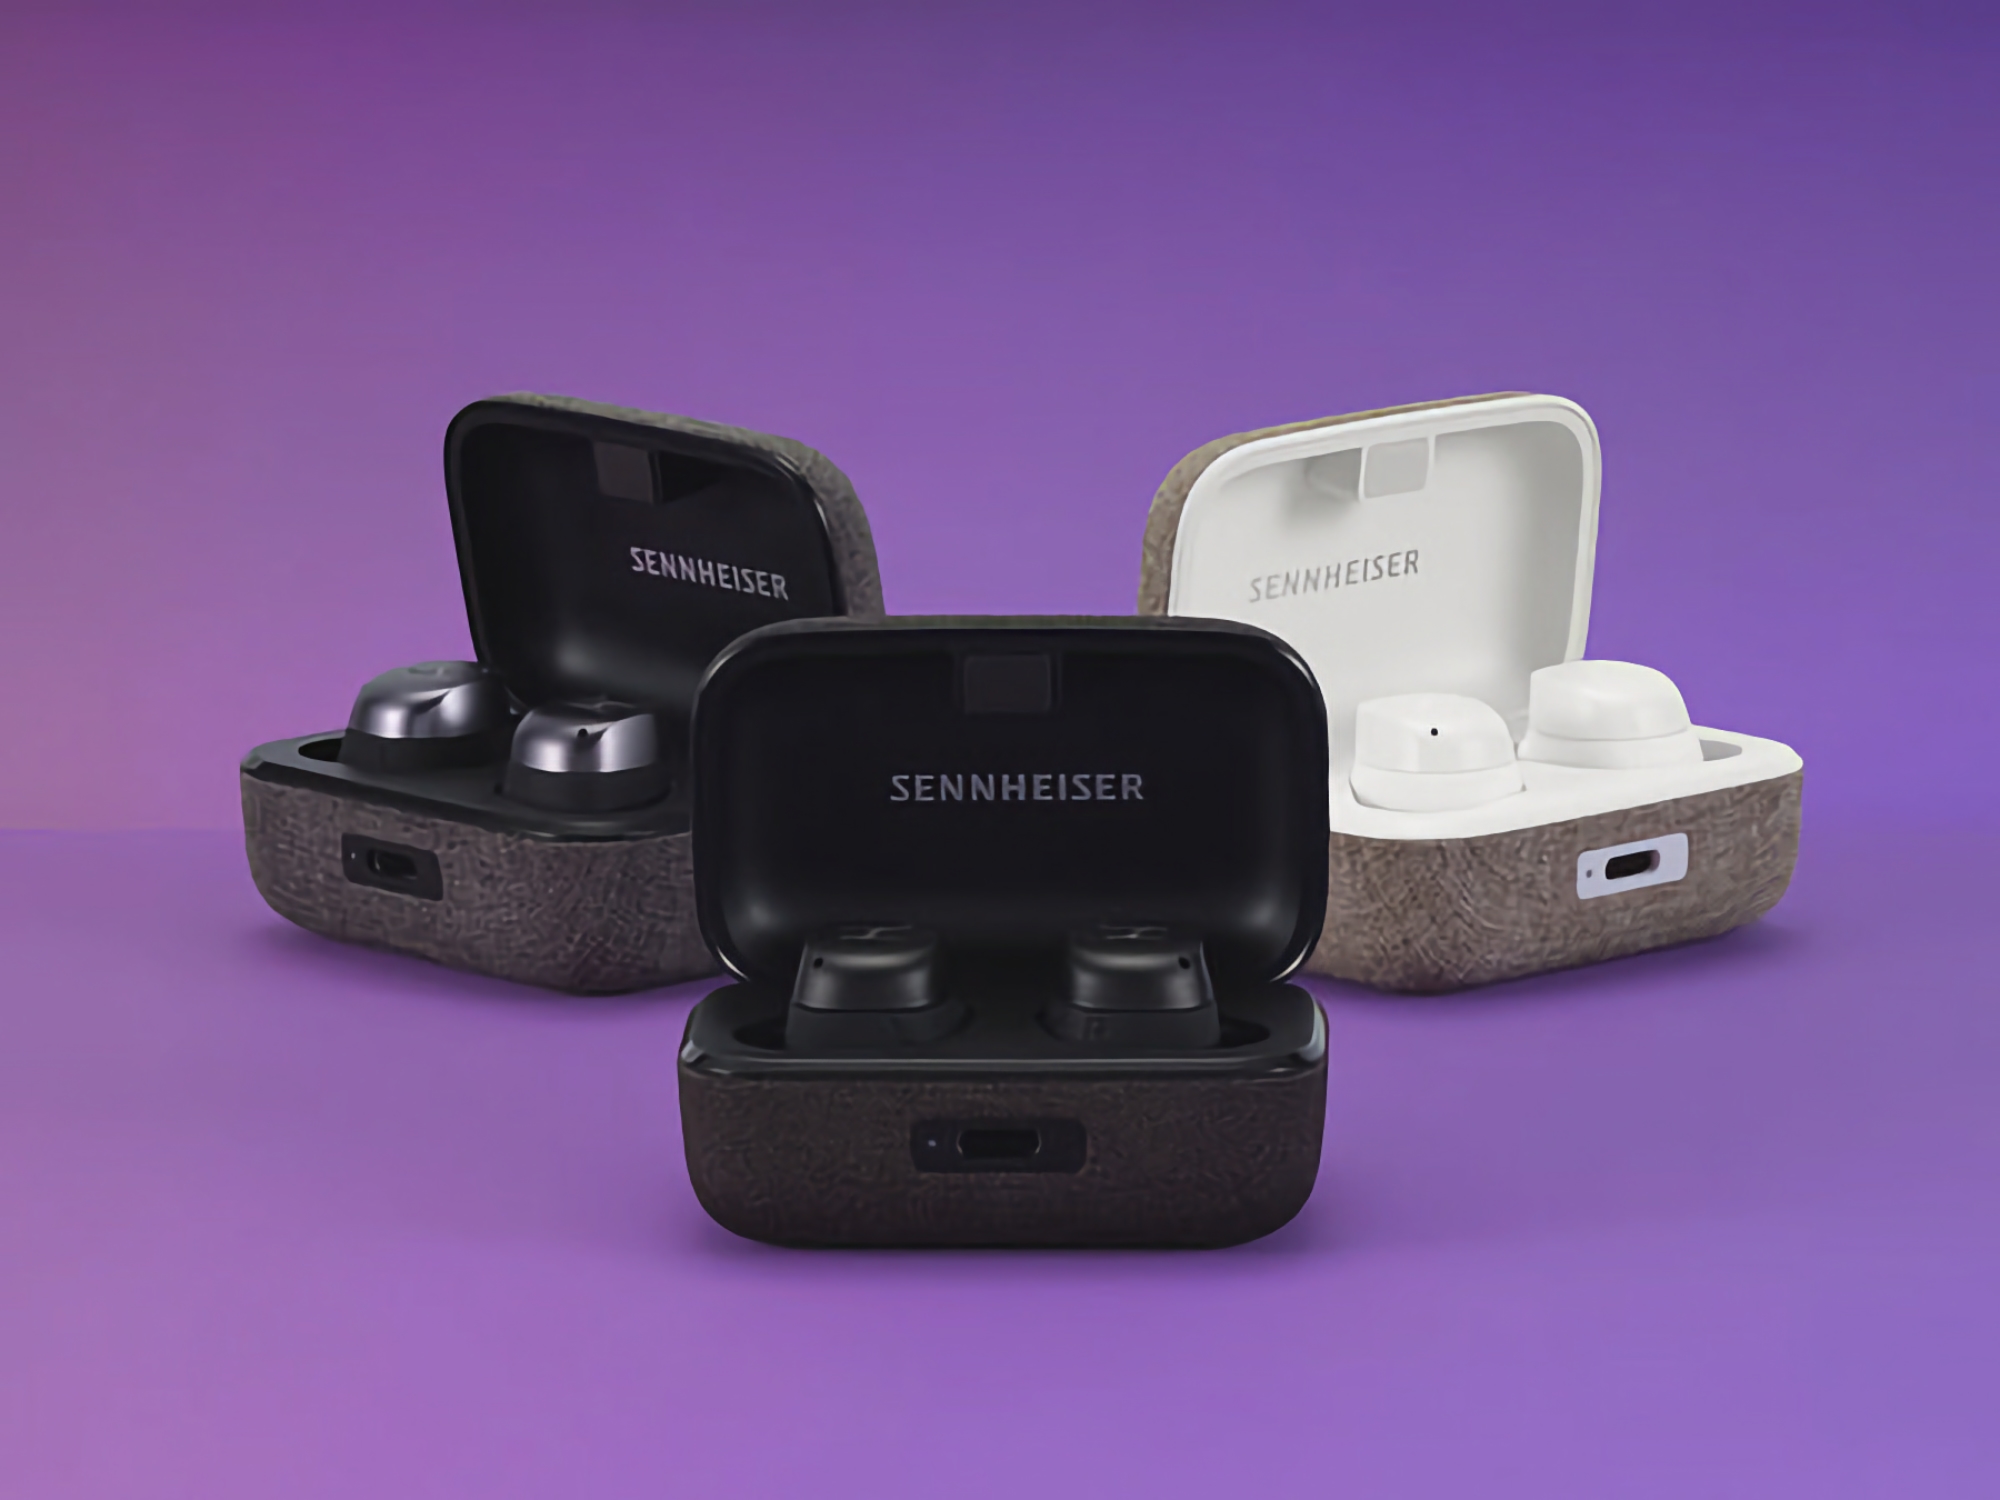 Sennheiser MOMENTUM True Wireless 3 está disponible en Amazon por 142 $ (137 $ de descuento)